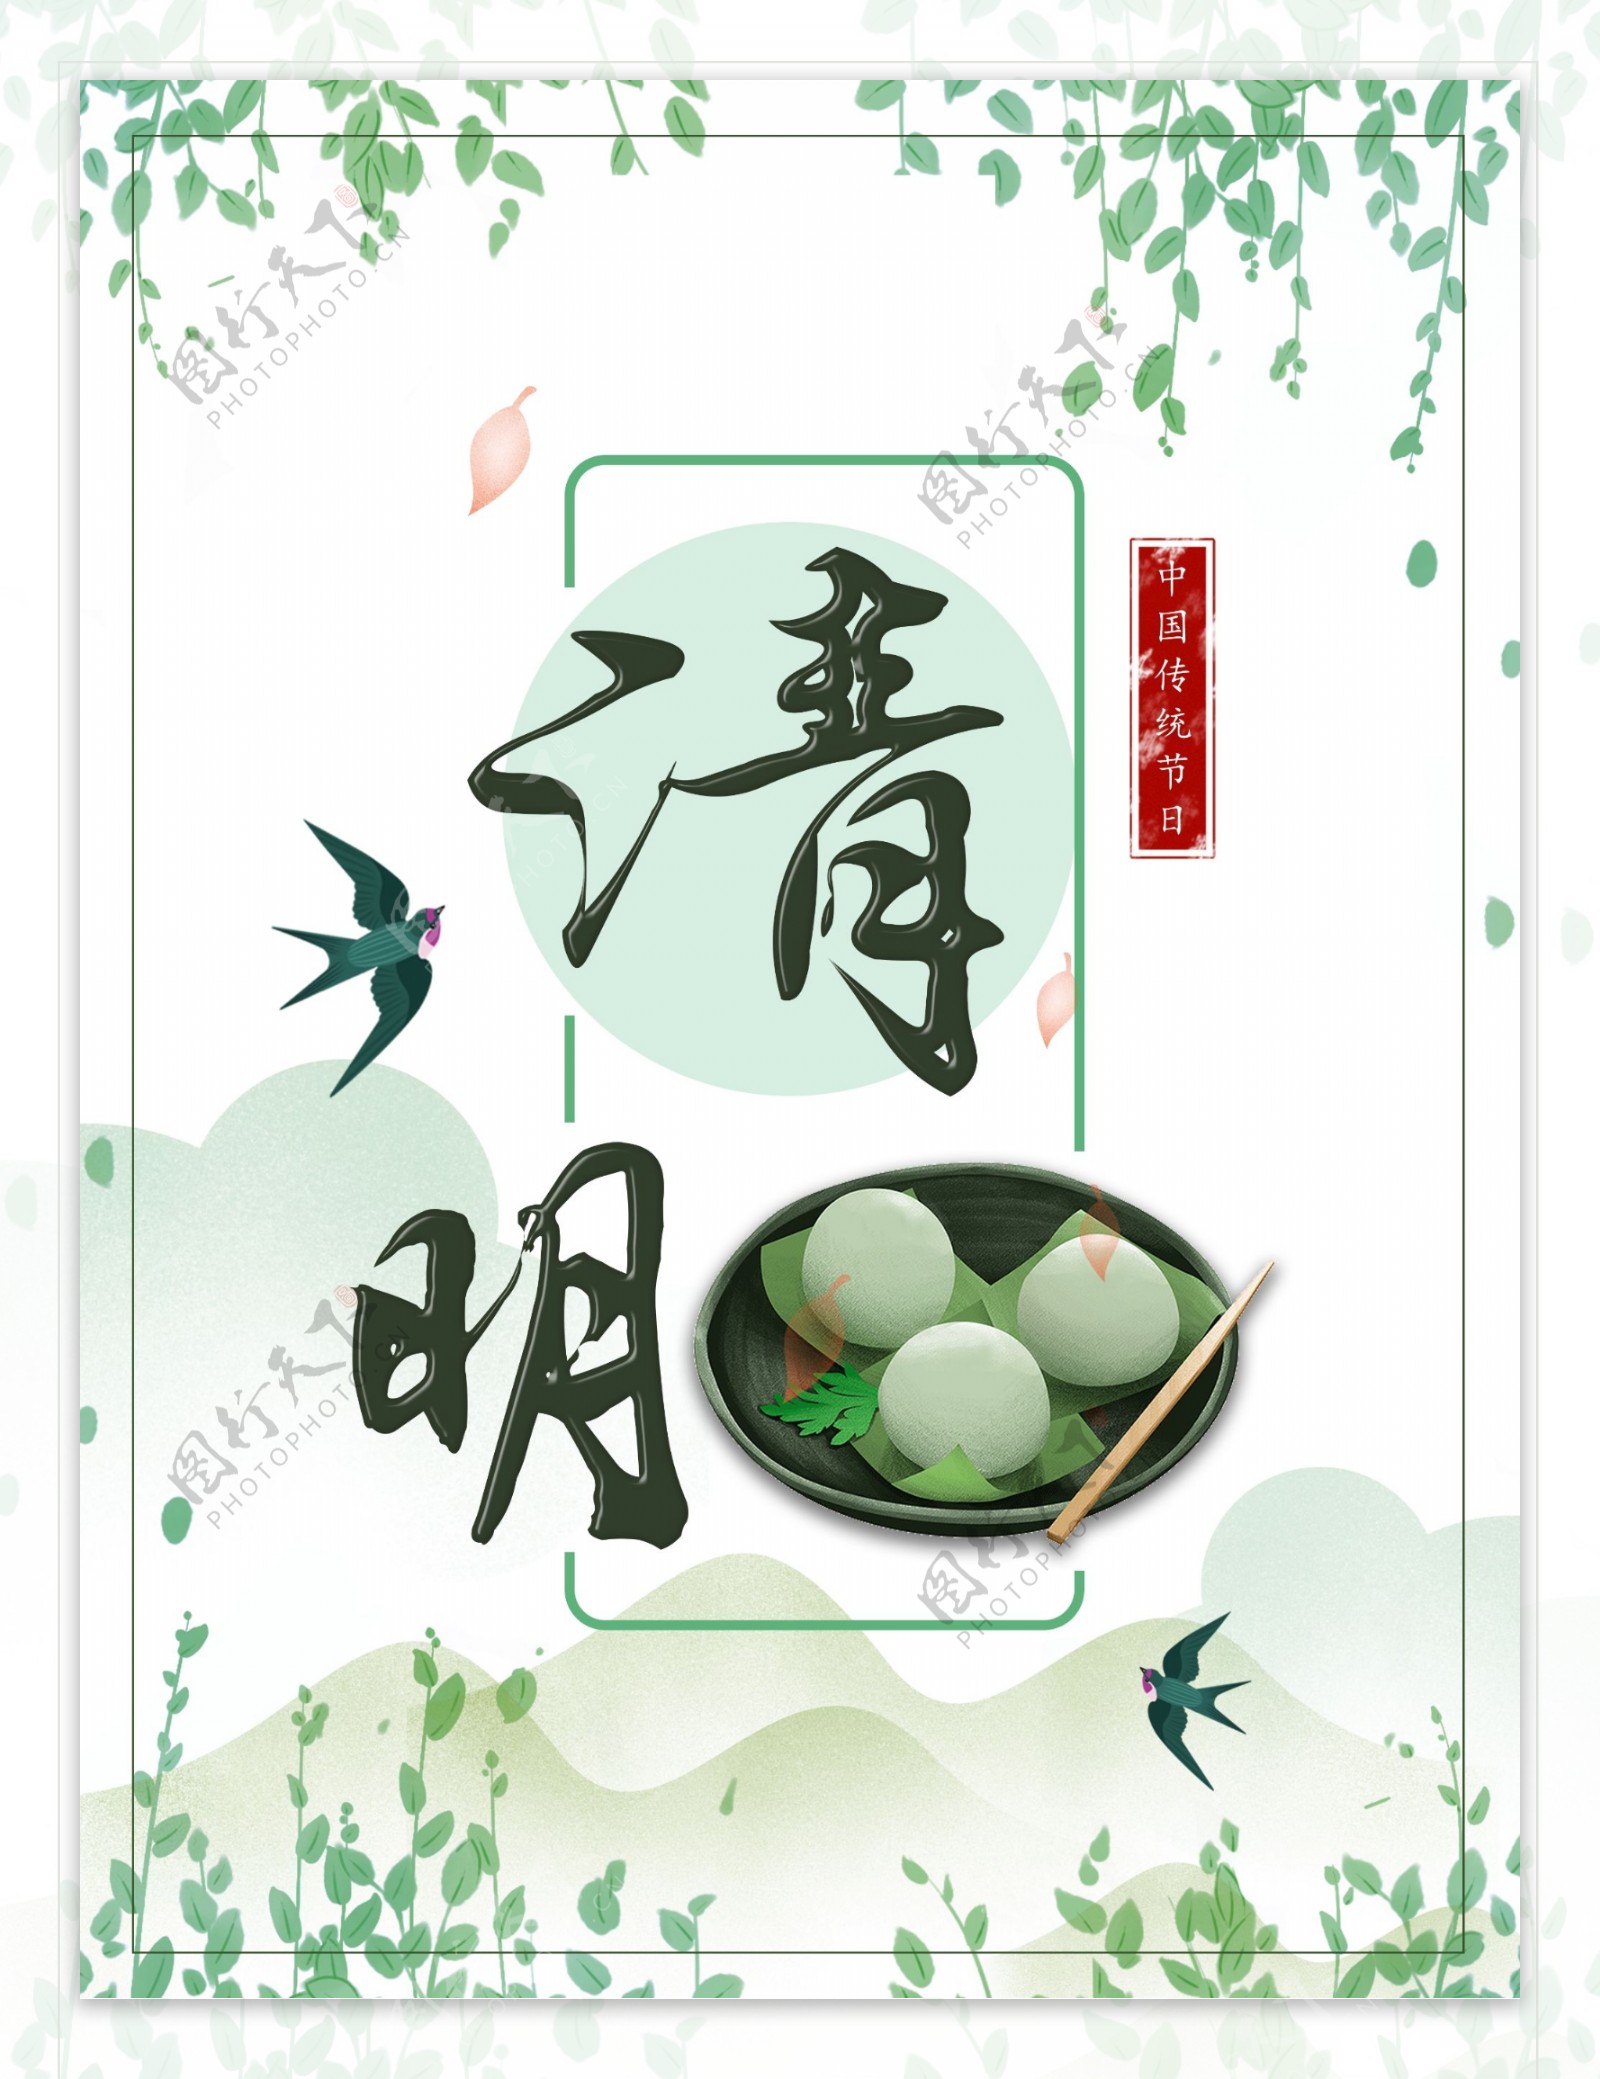 中国传统节日淡雅清明节海报